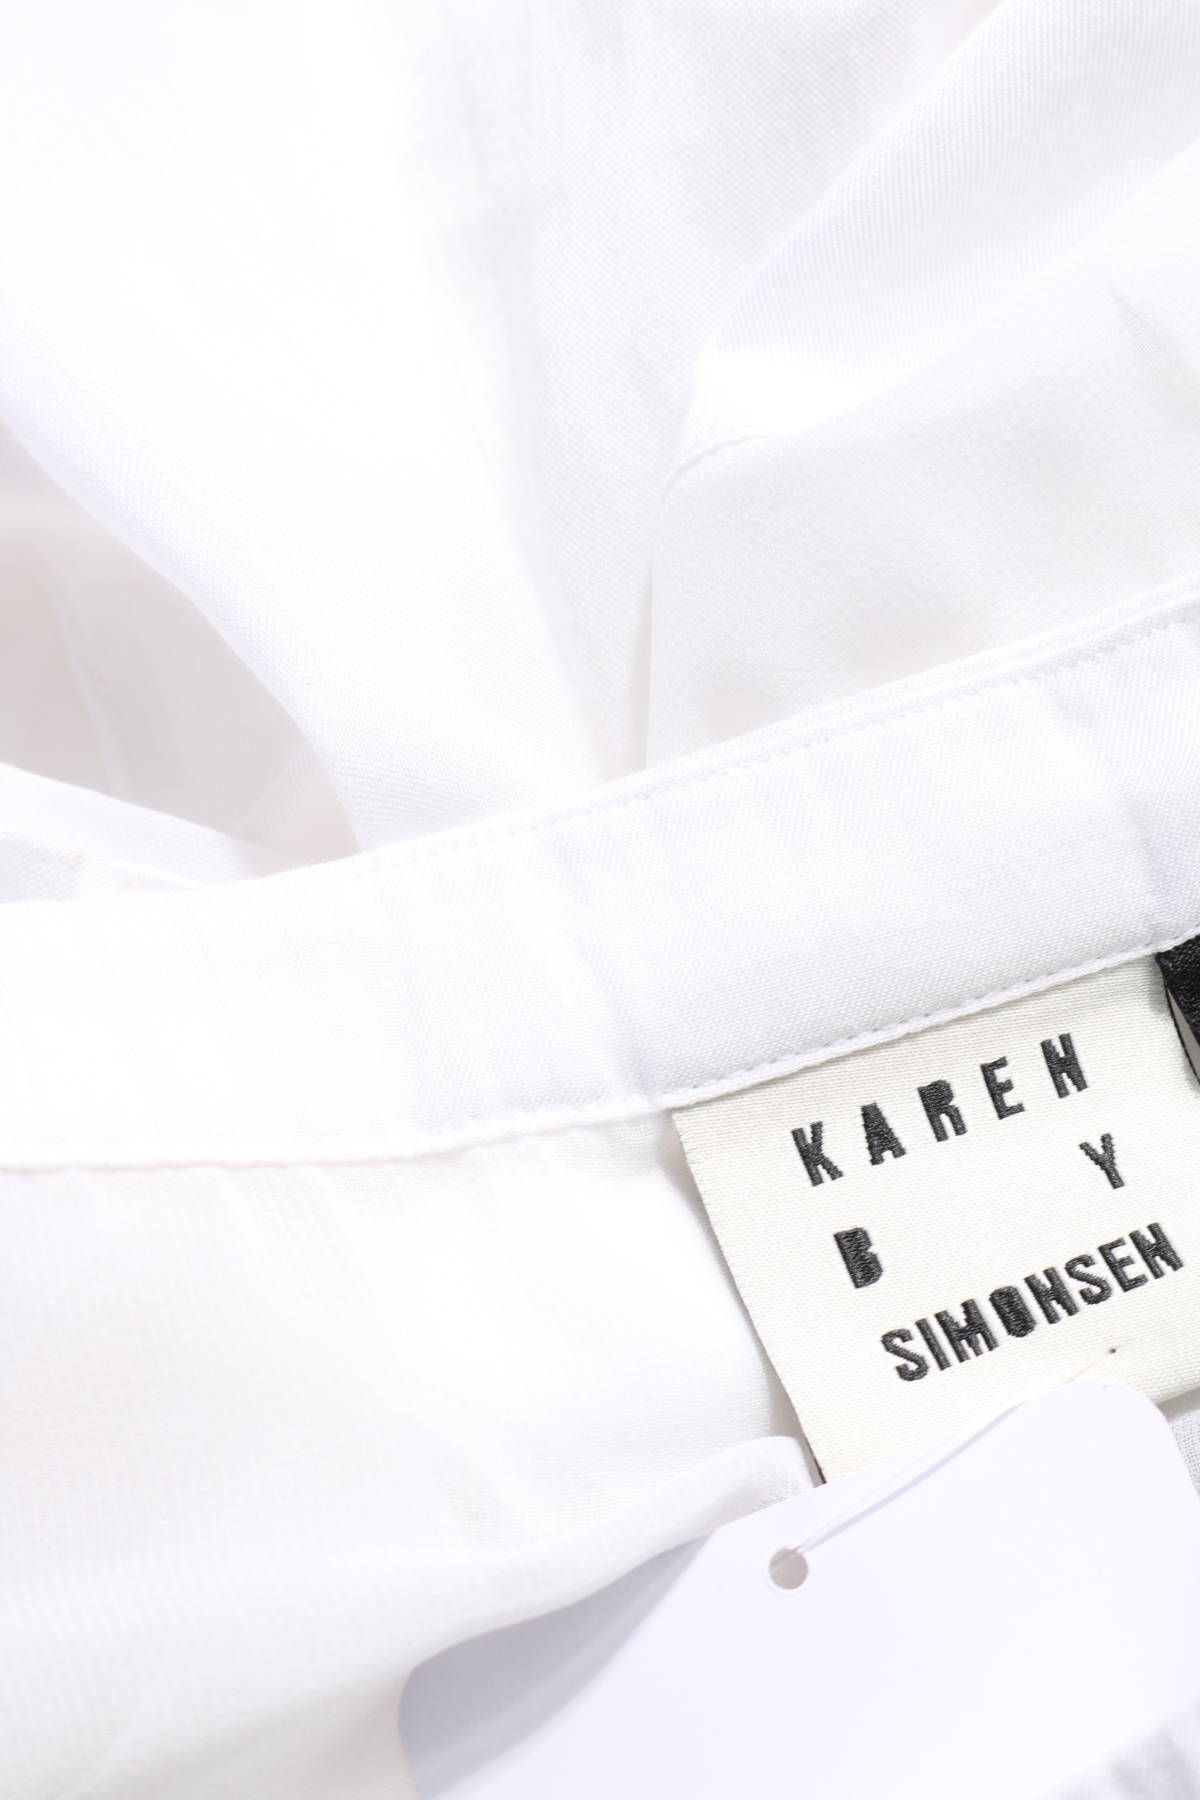 Блуза KAREN BY SIMONSEN3